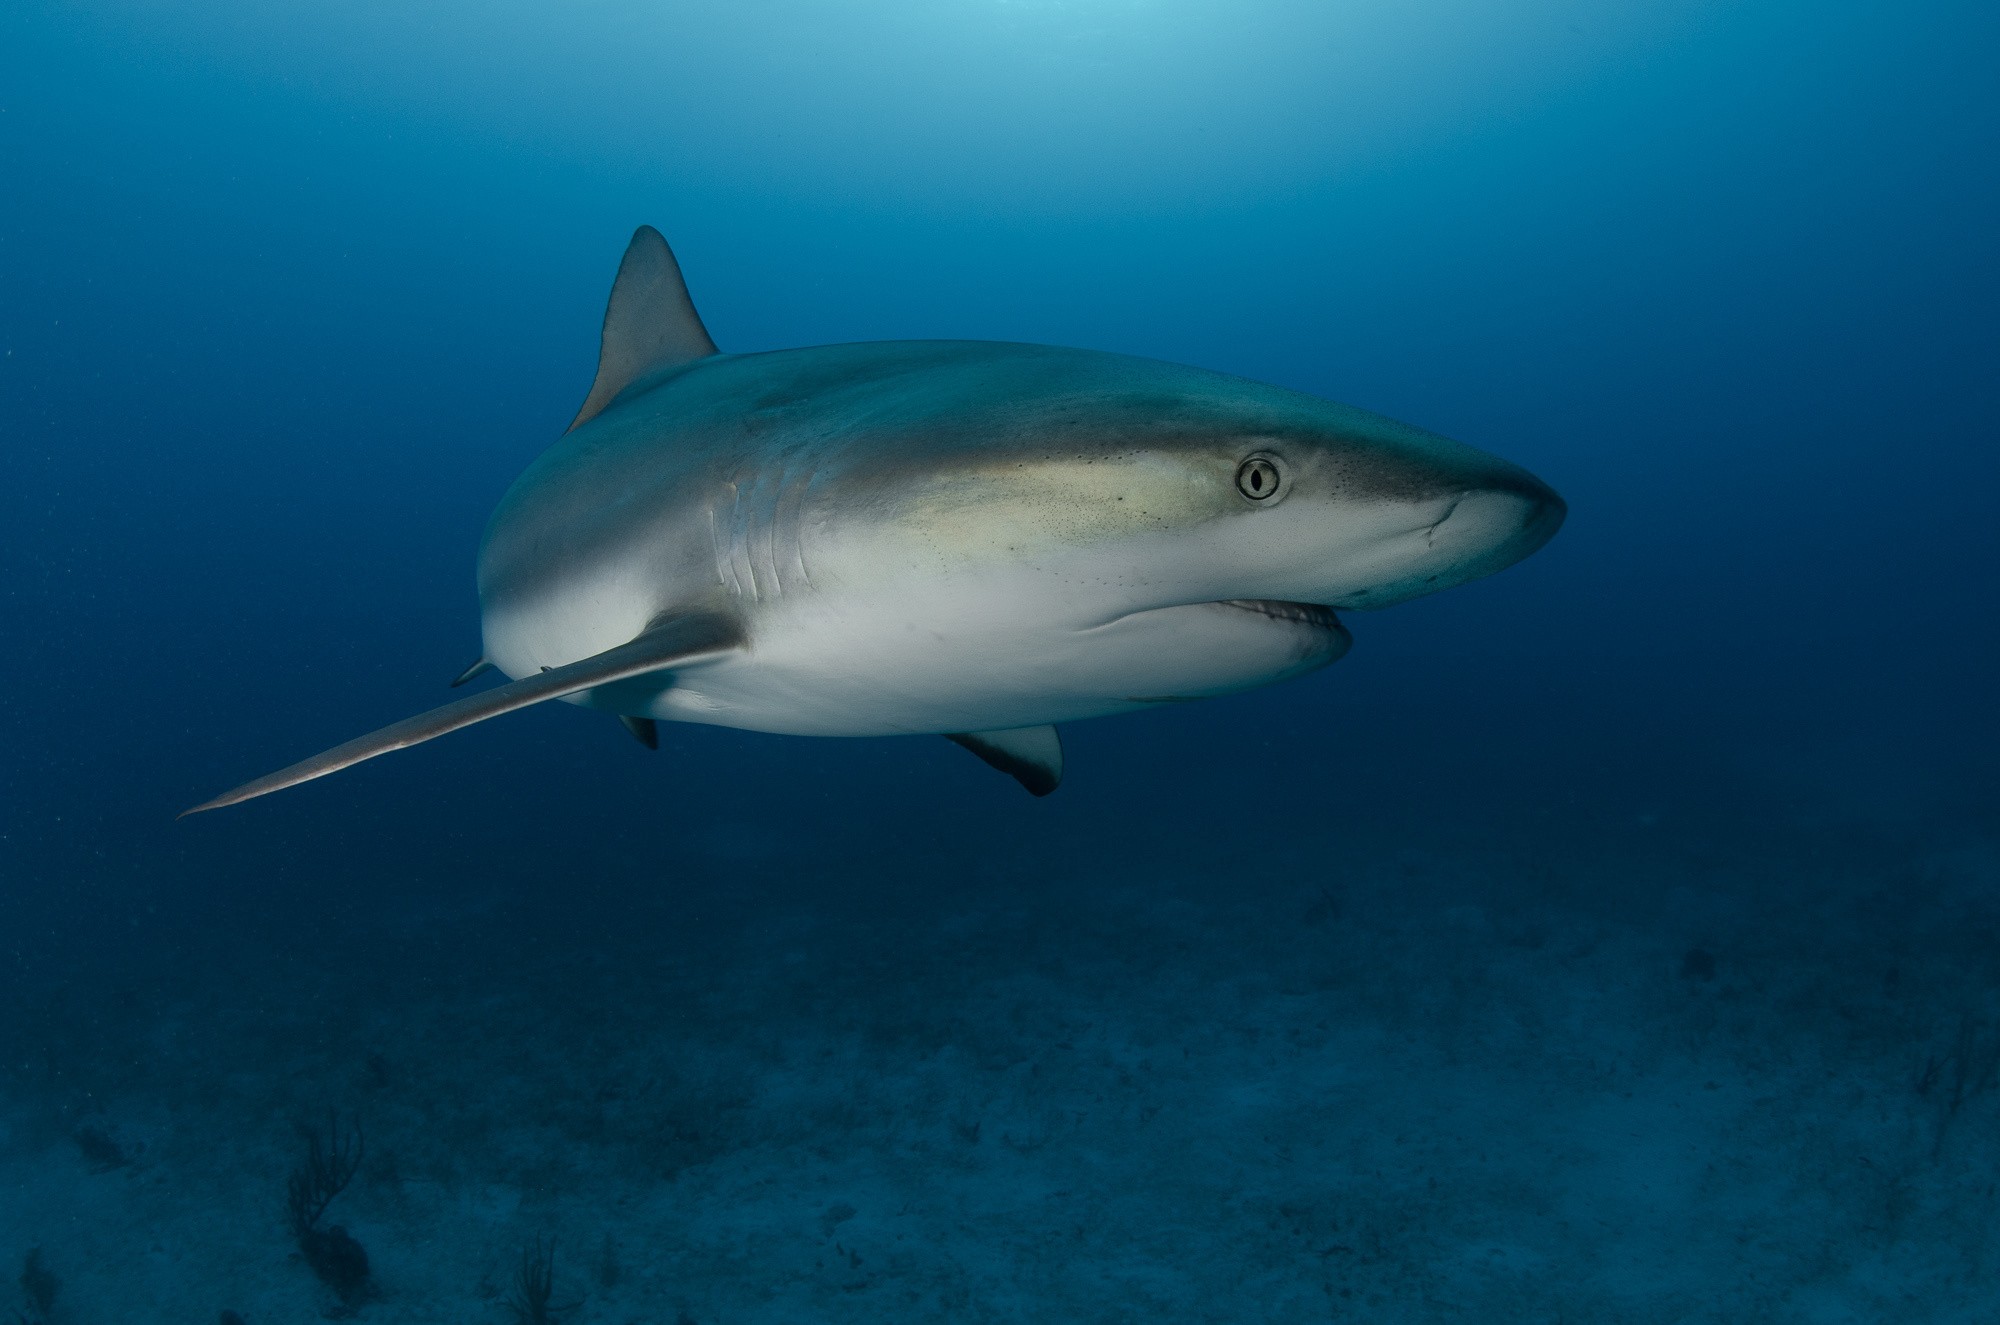 General 2000x1325 animals nature shark fish underwater sea life